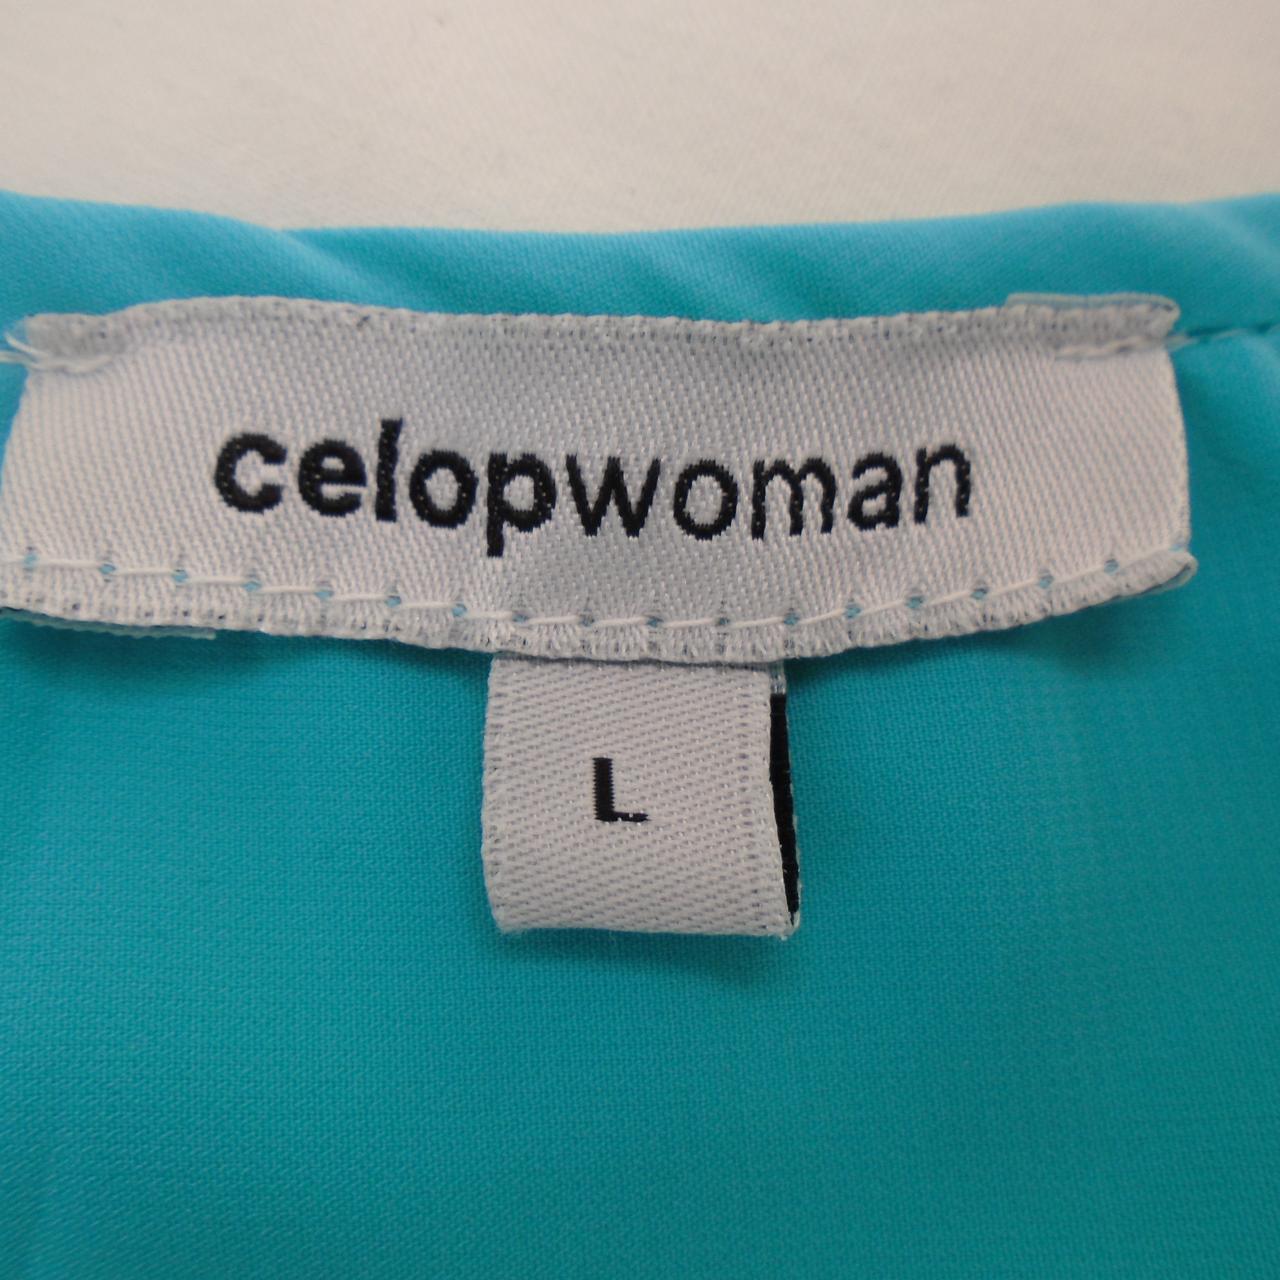 Pantalones cortos de mujer Celopwoman. Azul. L. Usado. Bien